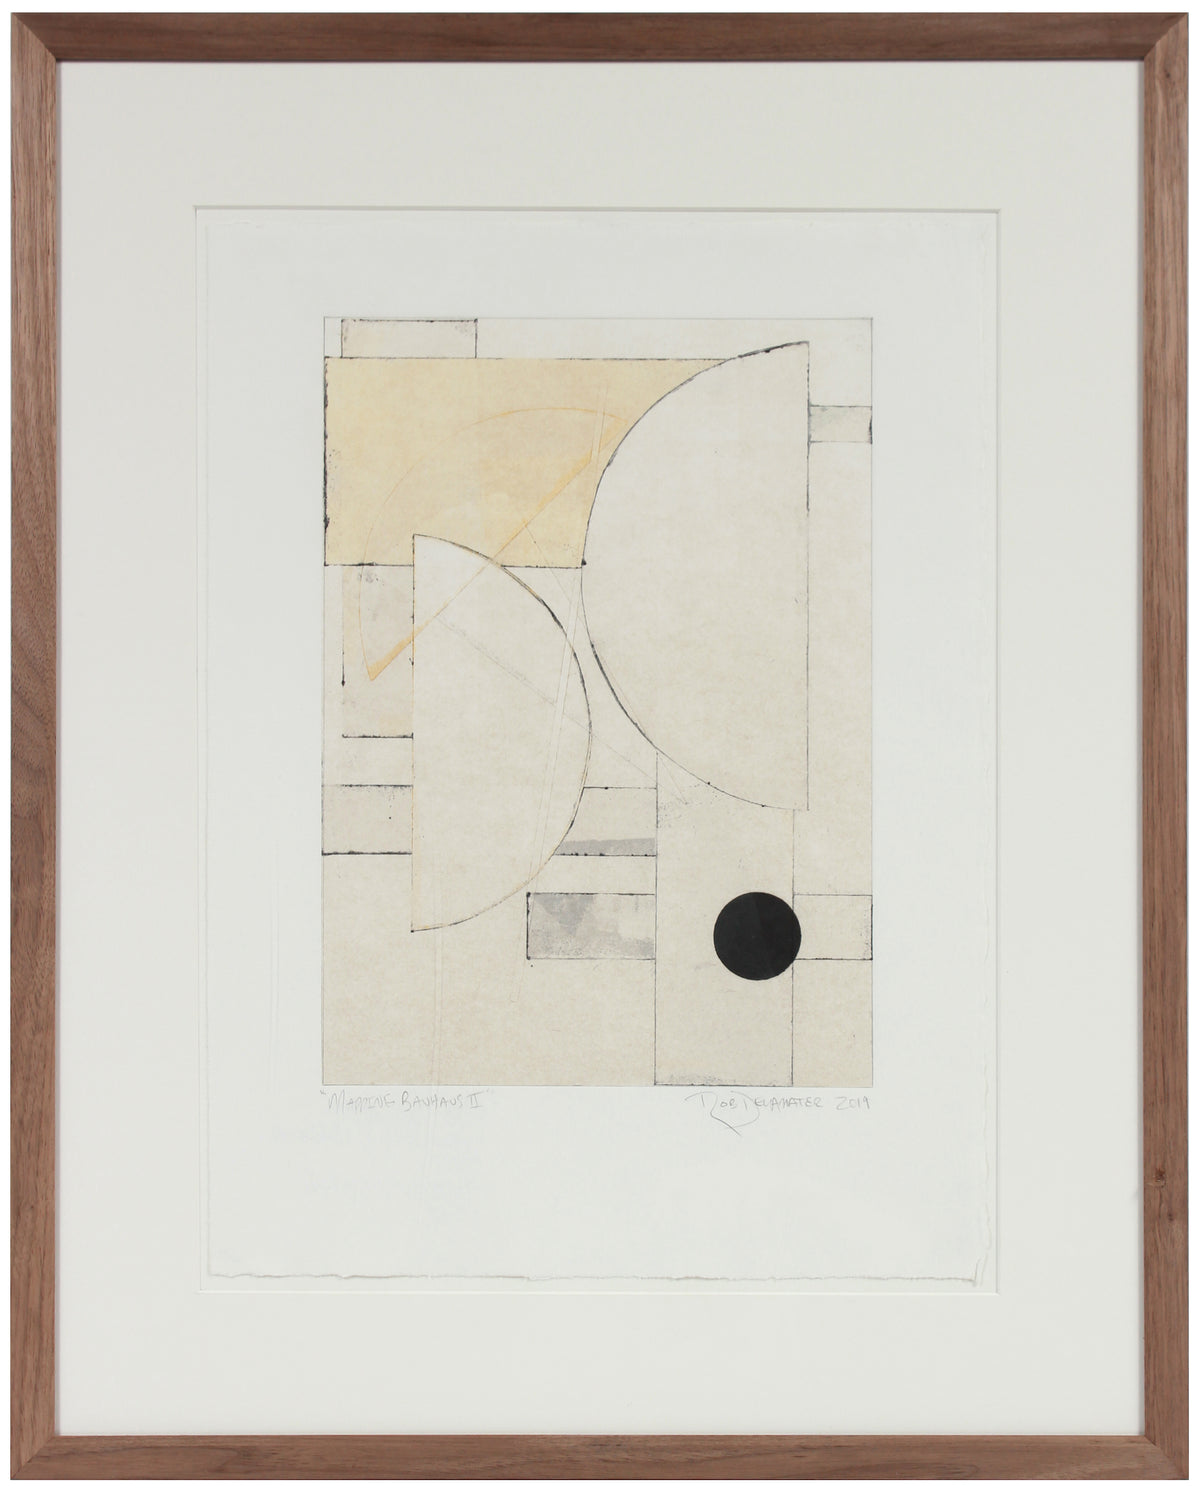 &lt;i&gt;Mapping Bauhaus II&lt;/i&gt; &lt;br&gt;2019 Monotype &lt;br&gt;&lt;br&gt;#A9091